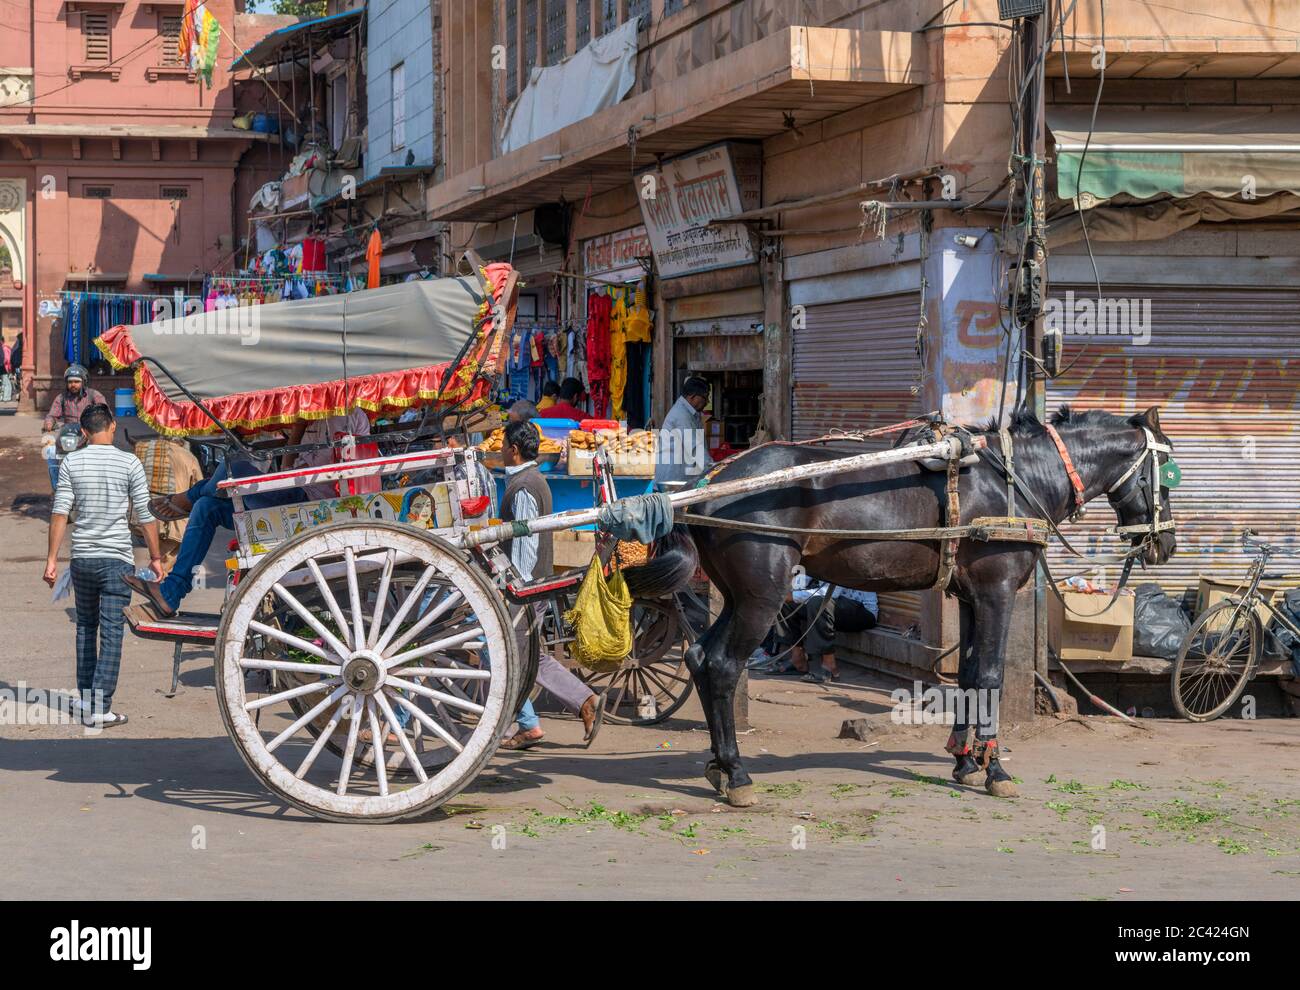 Cheval et chariot sur Nai Sarak, une rue animée dans le centre-ville près du marché de Sardar, Jodhpur, Rajasthan, Inde Banque D'Images